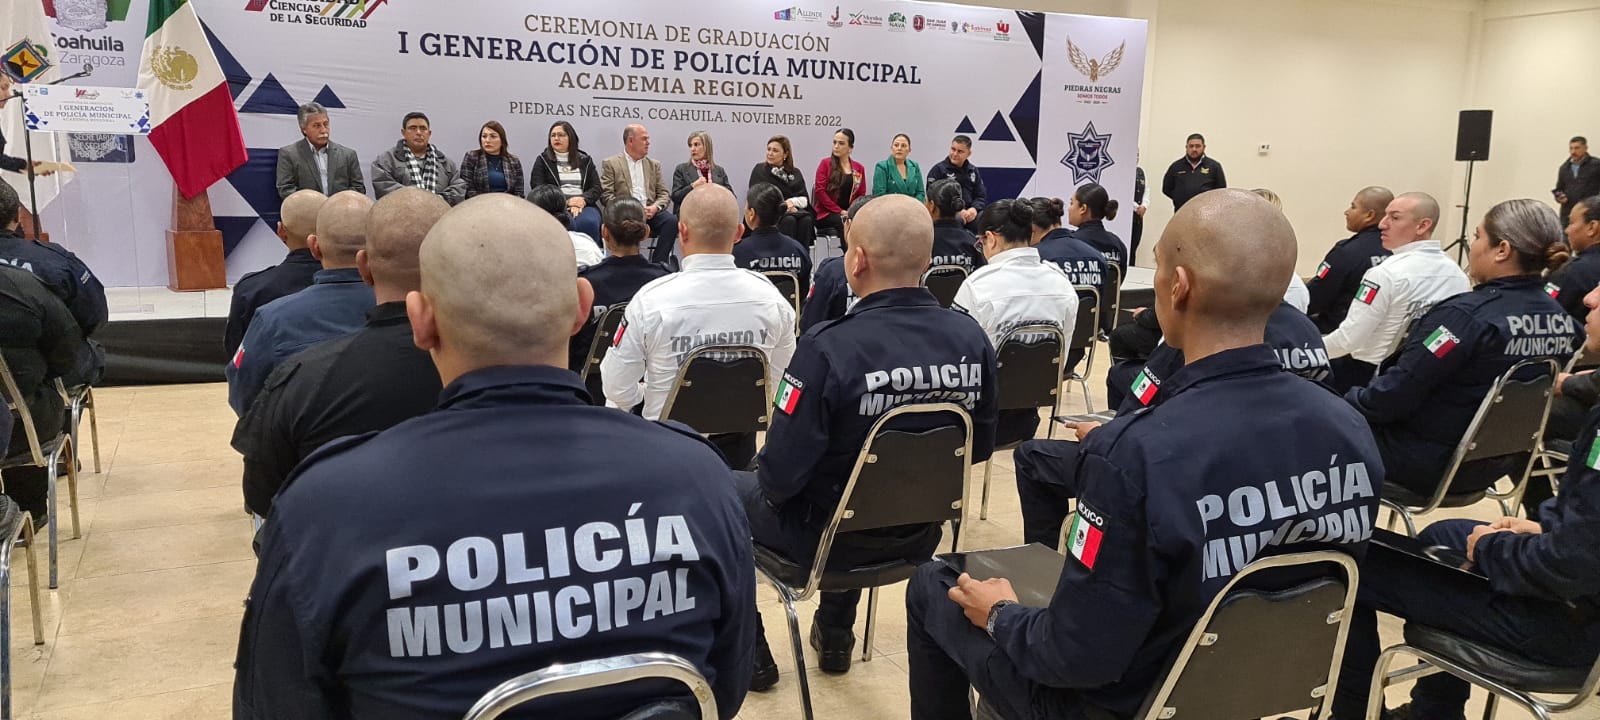 Se gradúa primera generación de Academia Regional del norte de Coahuila